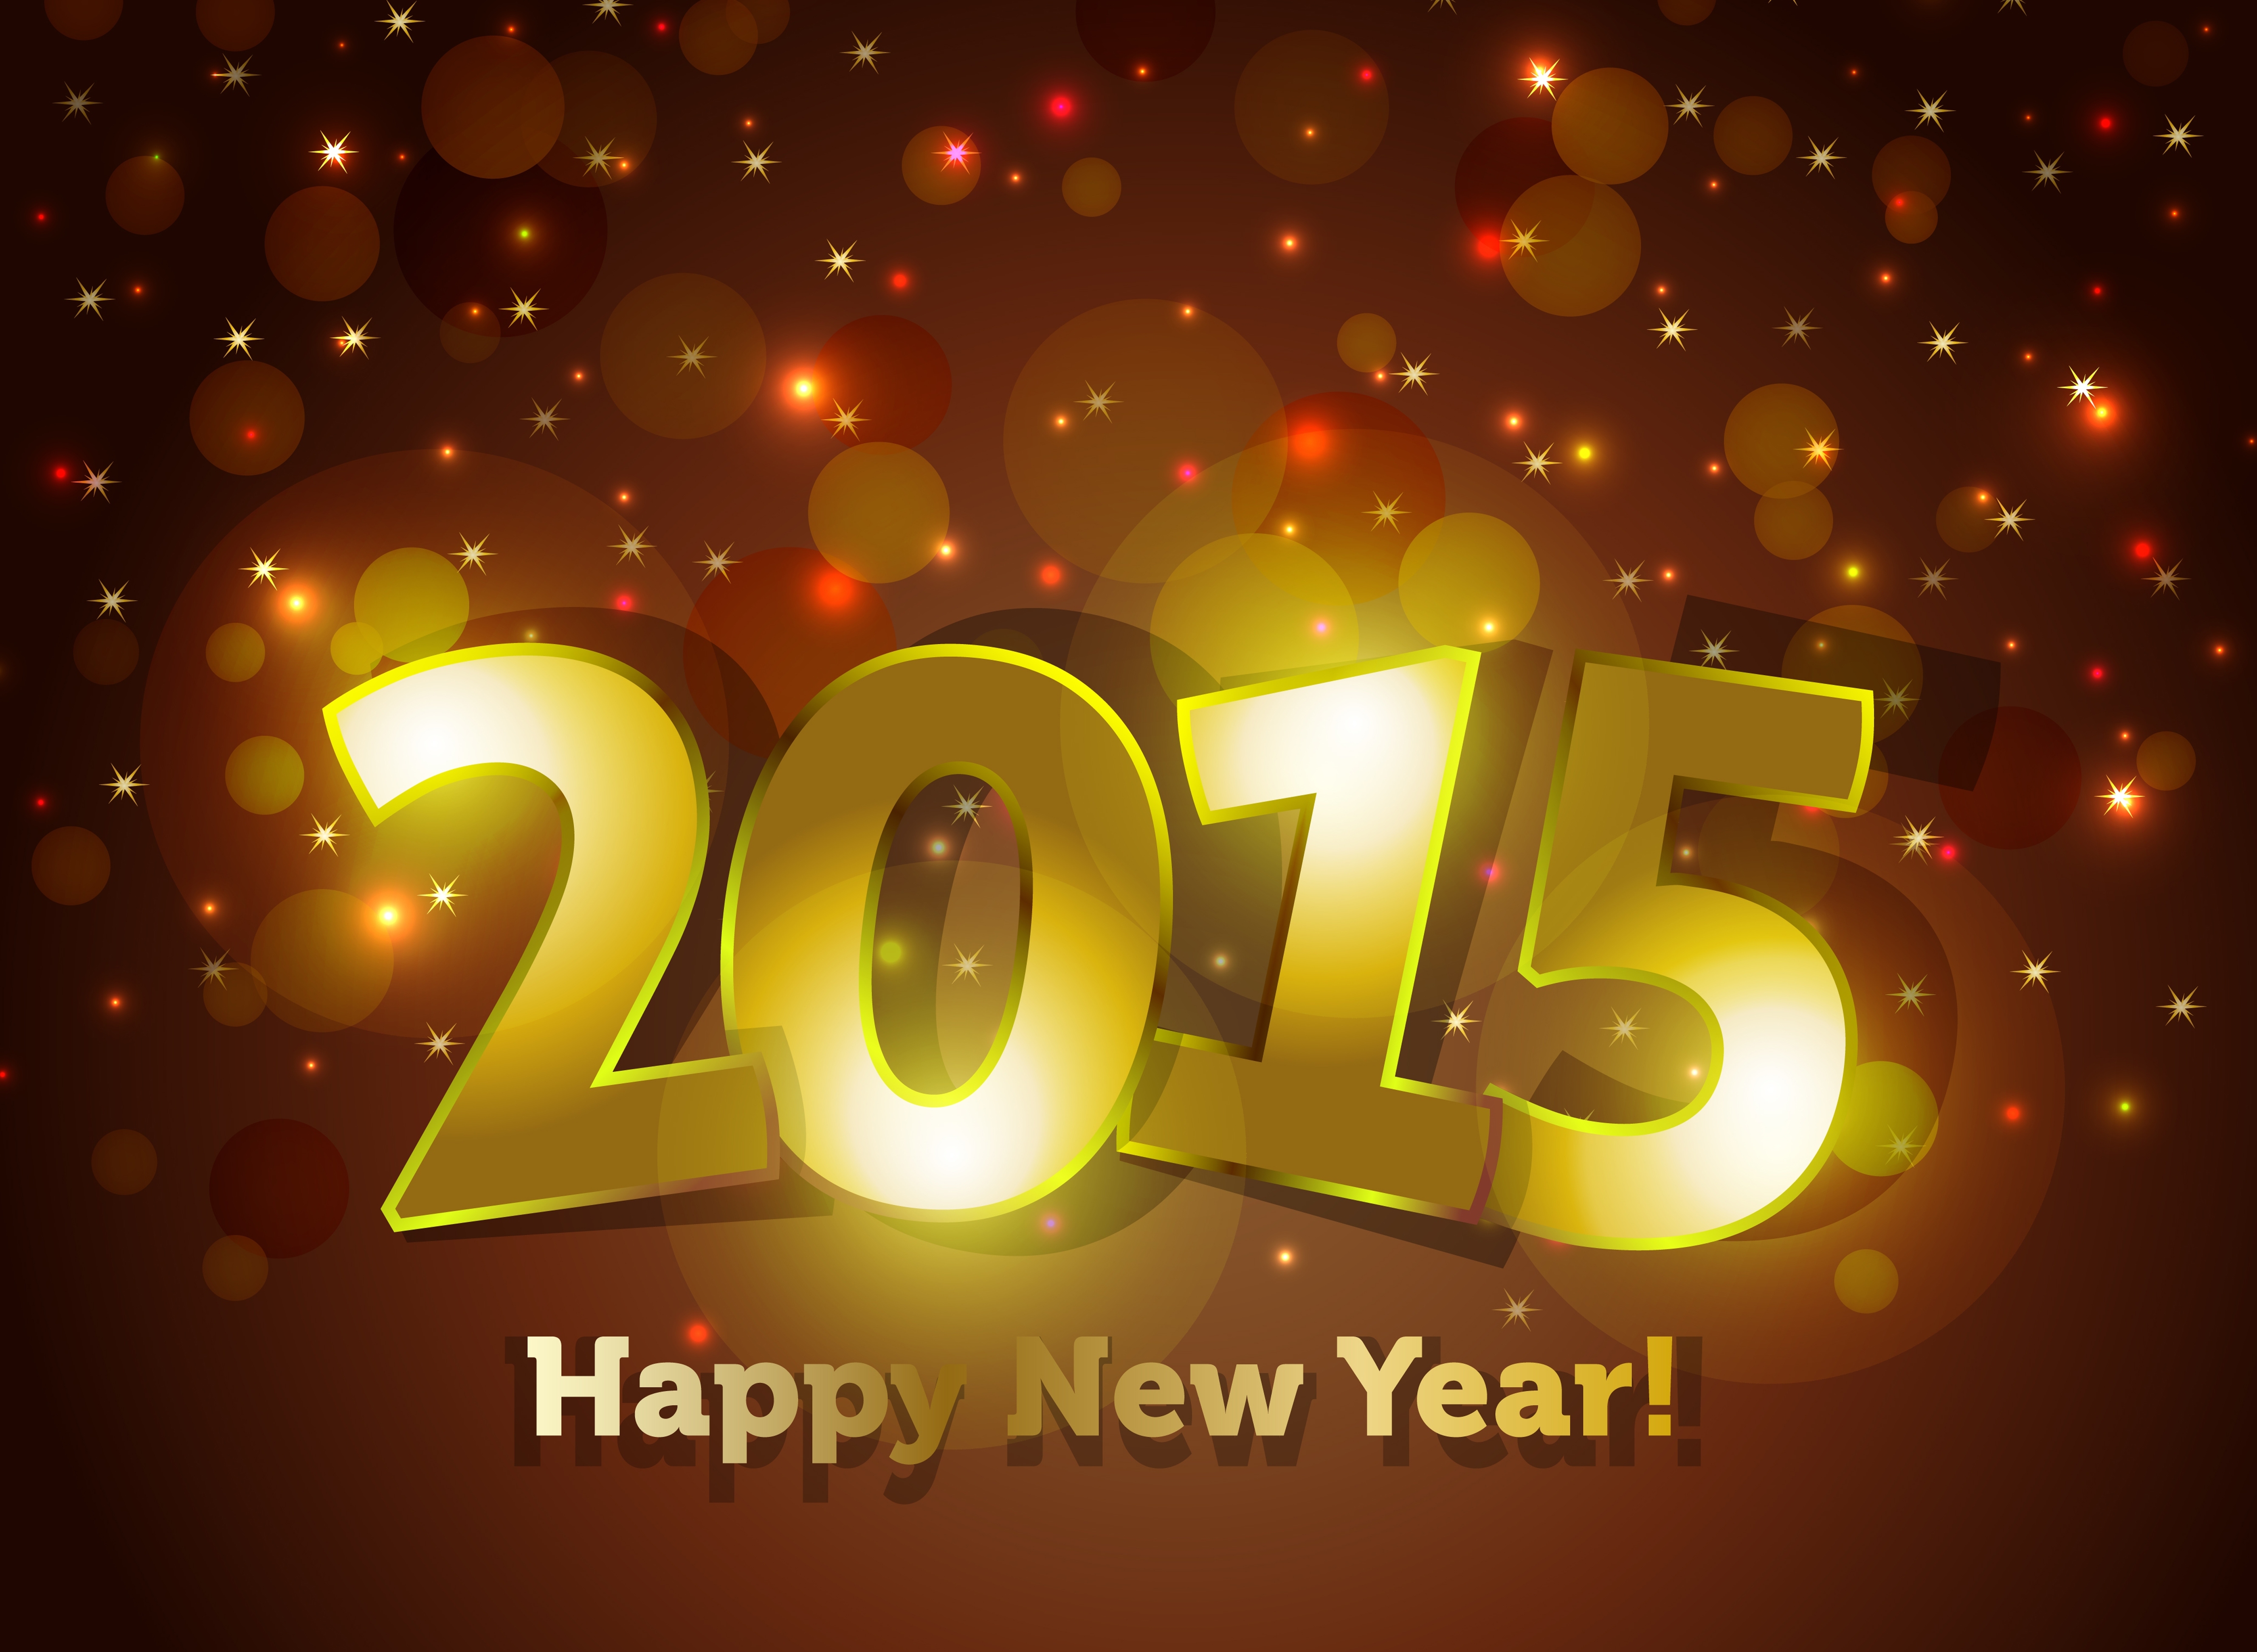 2014 год 2015 год тыс. Новый год 2015. Картинки новый год 2015. С новым годом 2015 картинки. Новогодние открытки 2015.